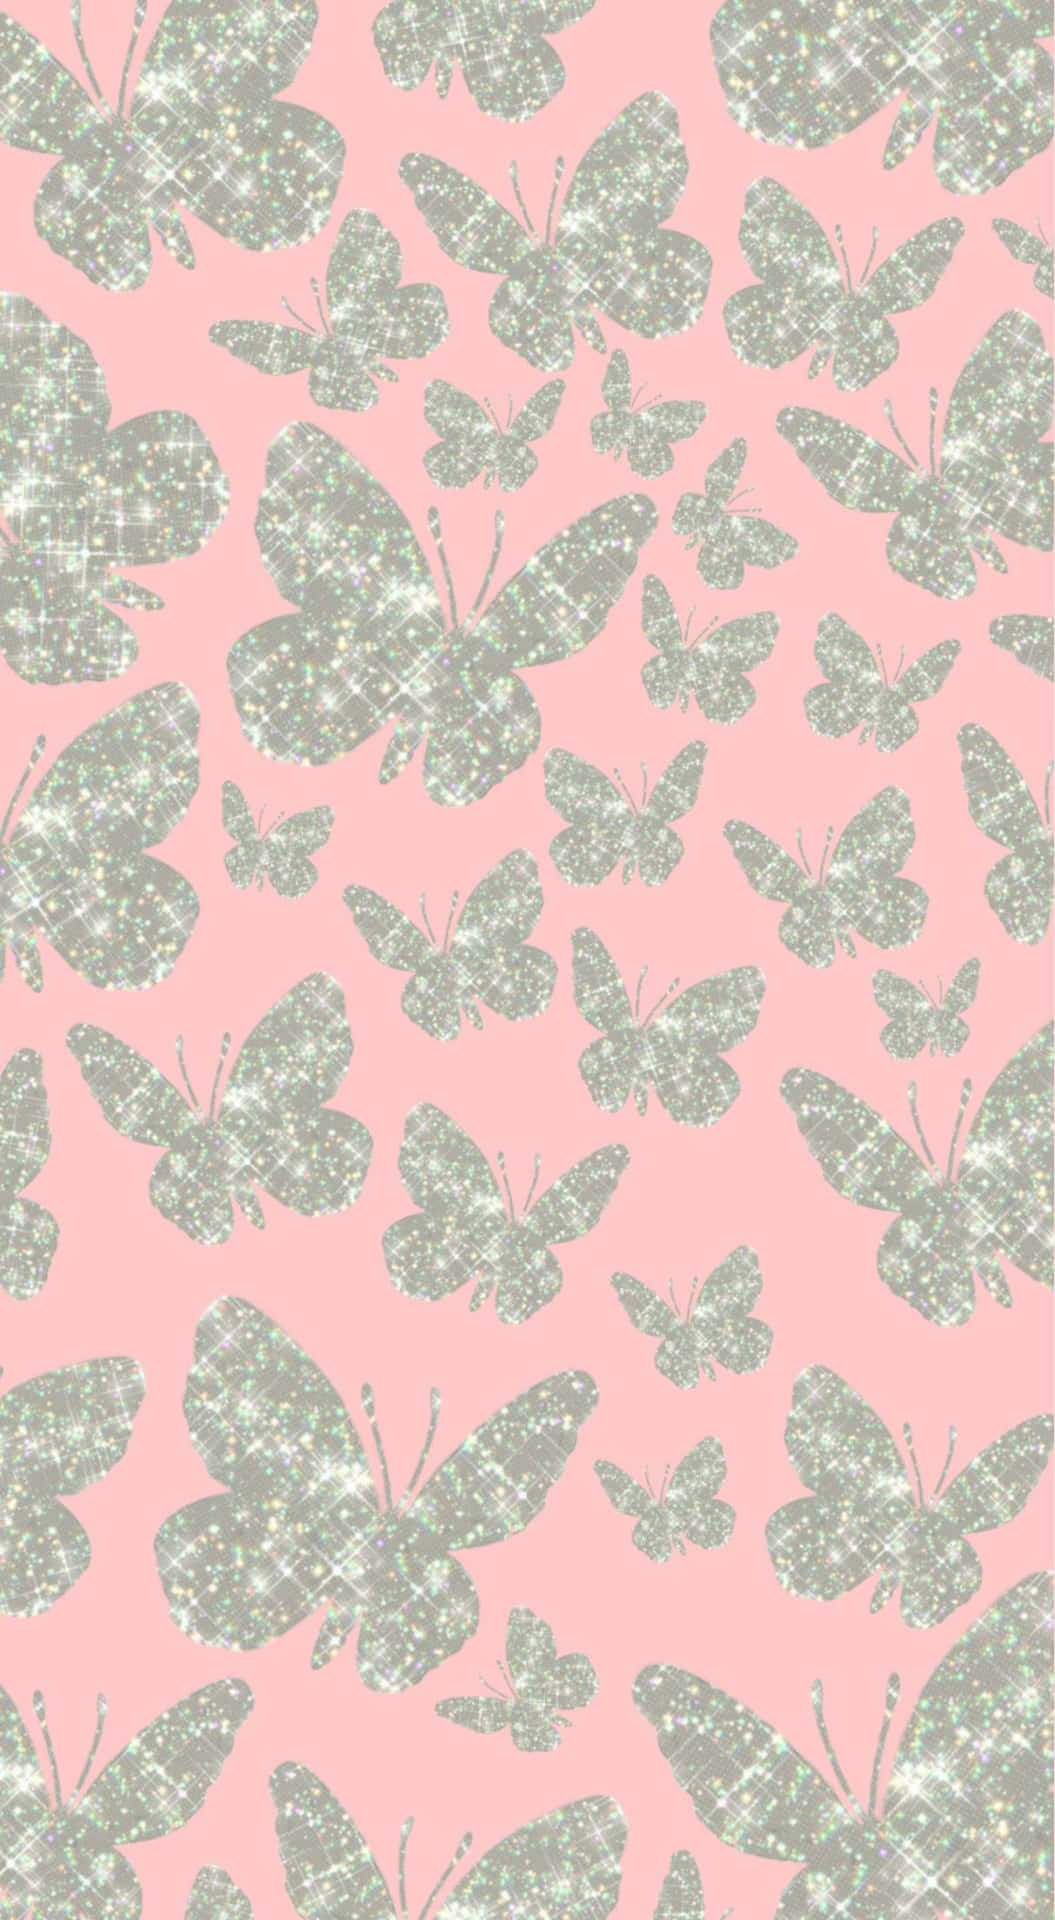 Glittery Butterflies Pink Background Wallpaper